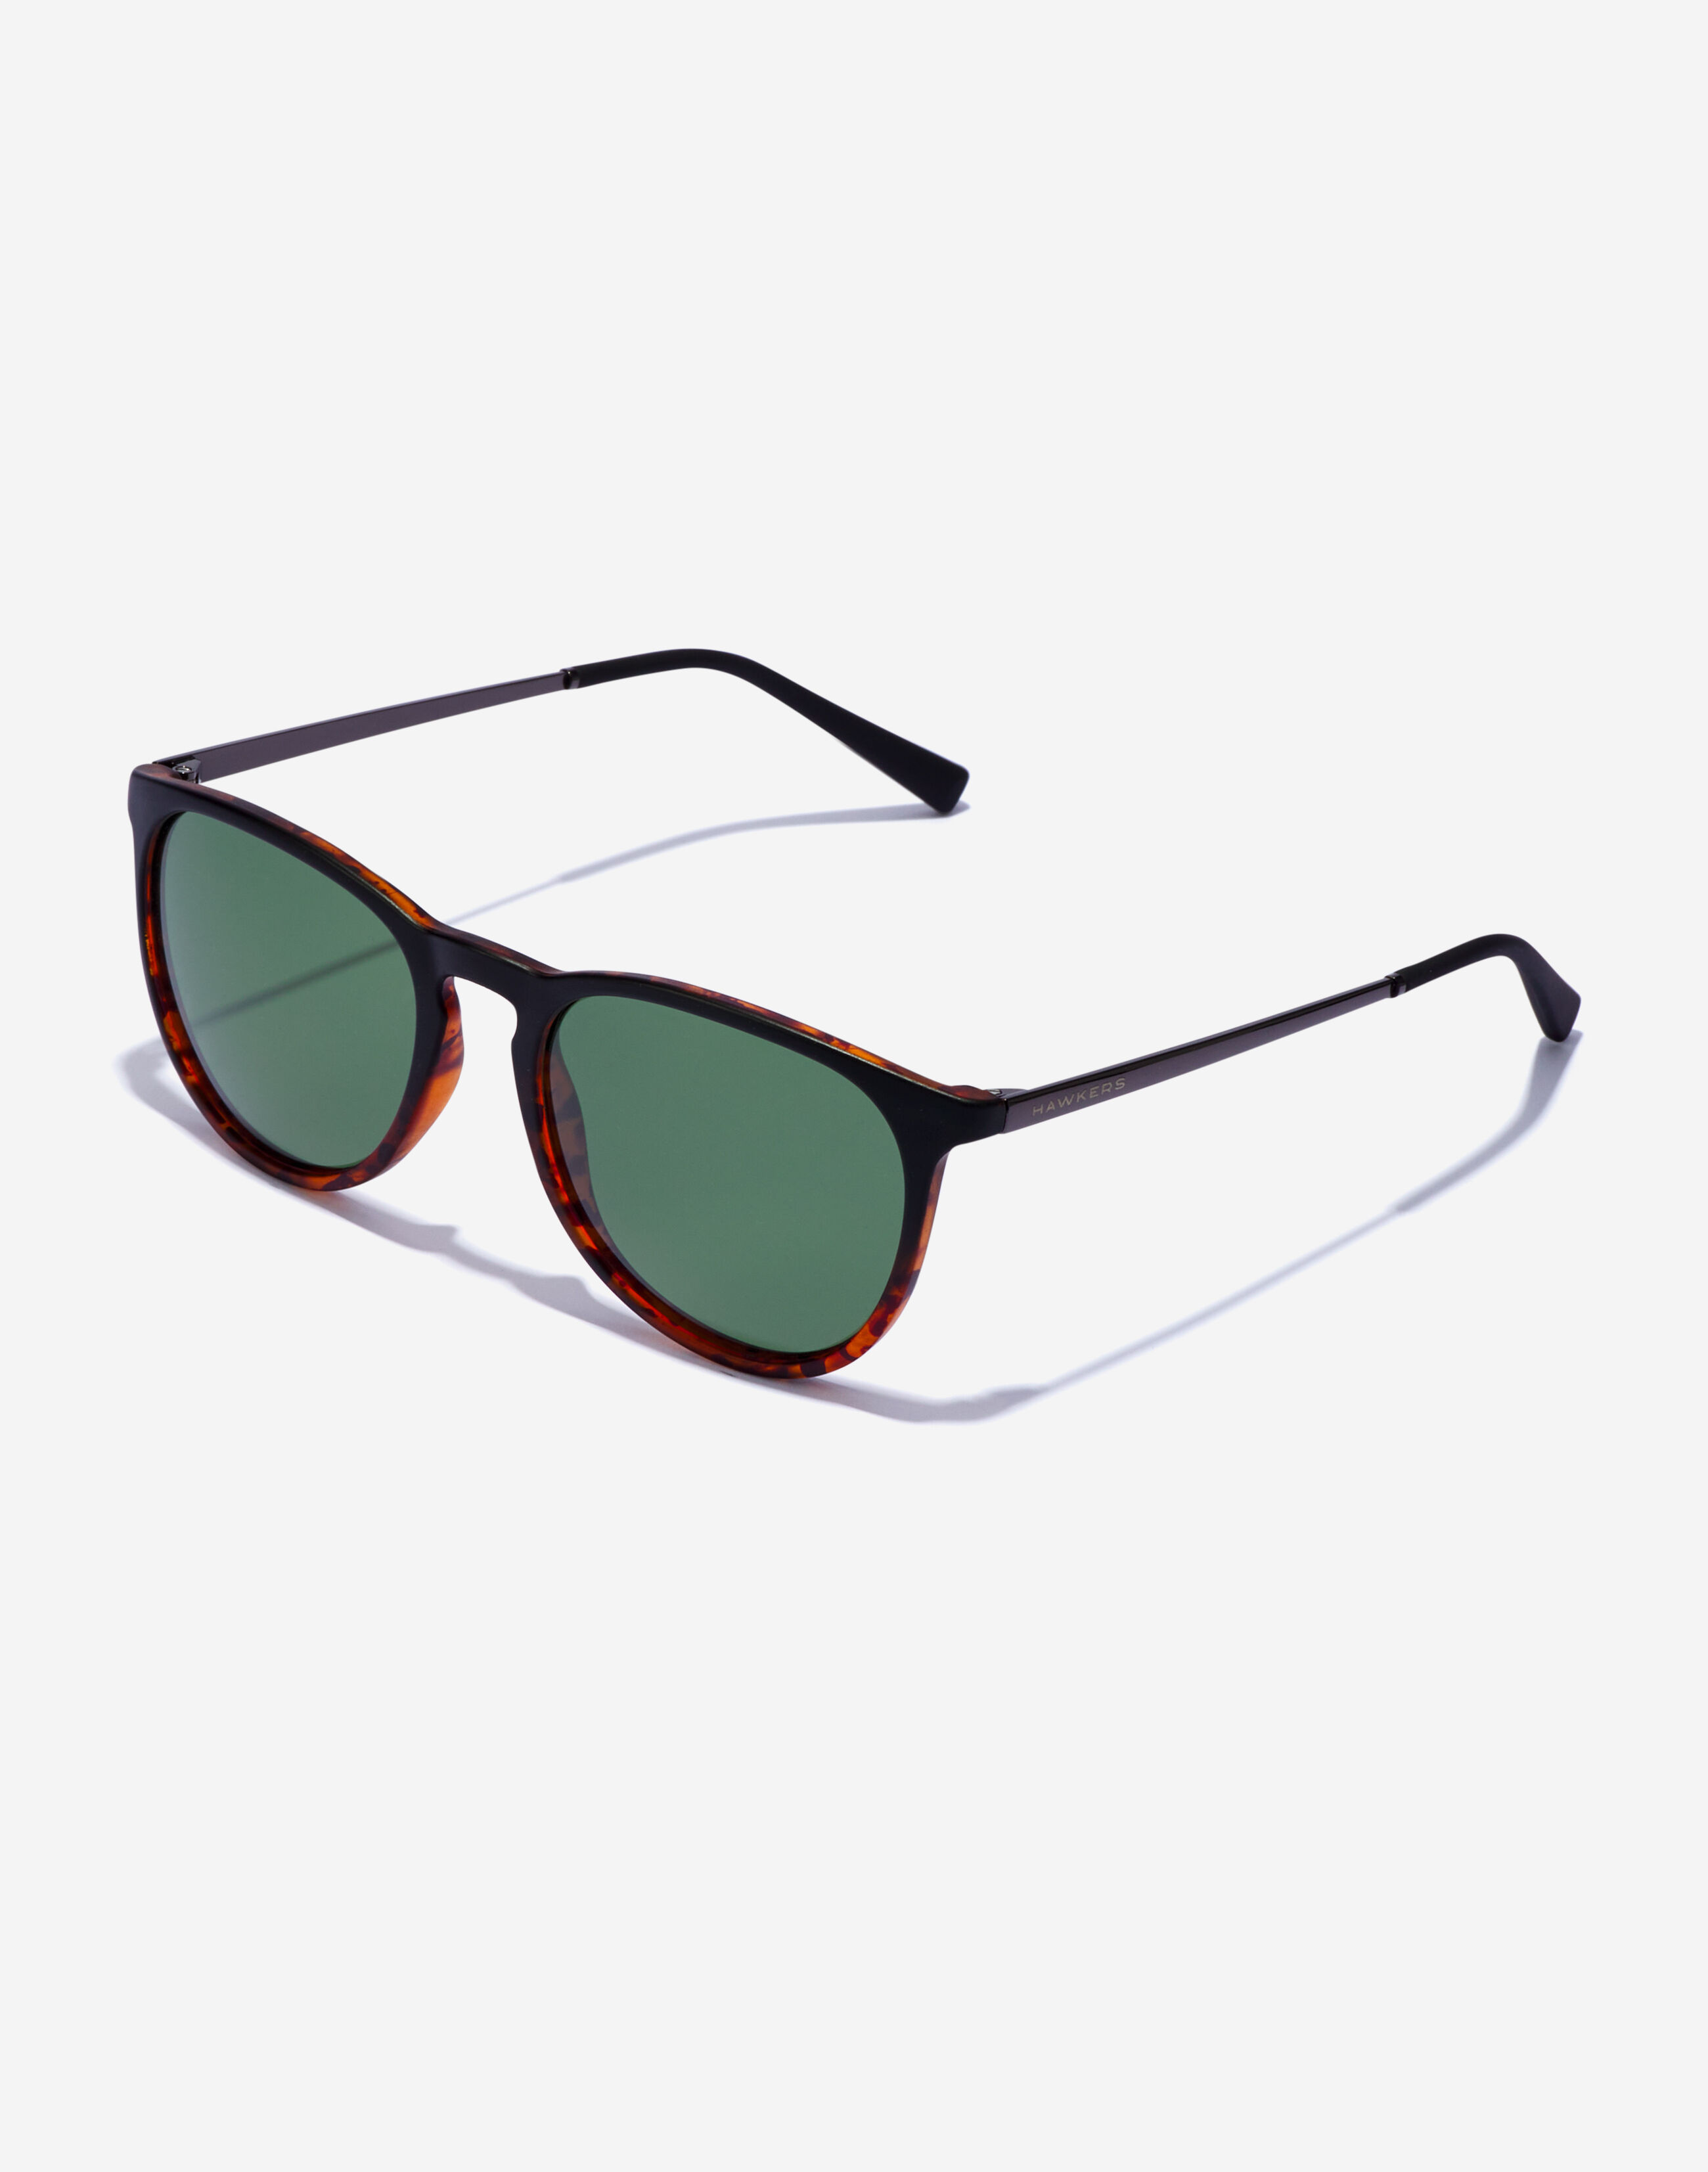 Gafas de Sol Mujer Redonda Gafas de Sol de Espejo Hawkers Gafas de Sol Cat Eye Fashion Sunglasses Fashion Light Sunglasses ProteccióN Ojo Gafas Deportivas 